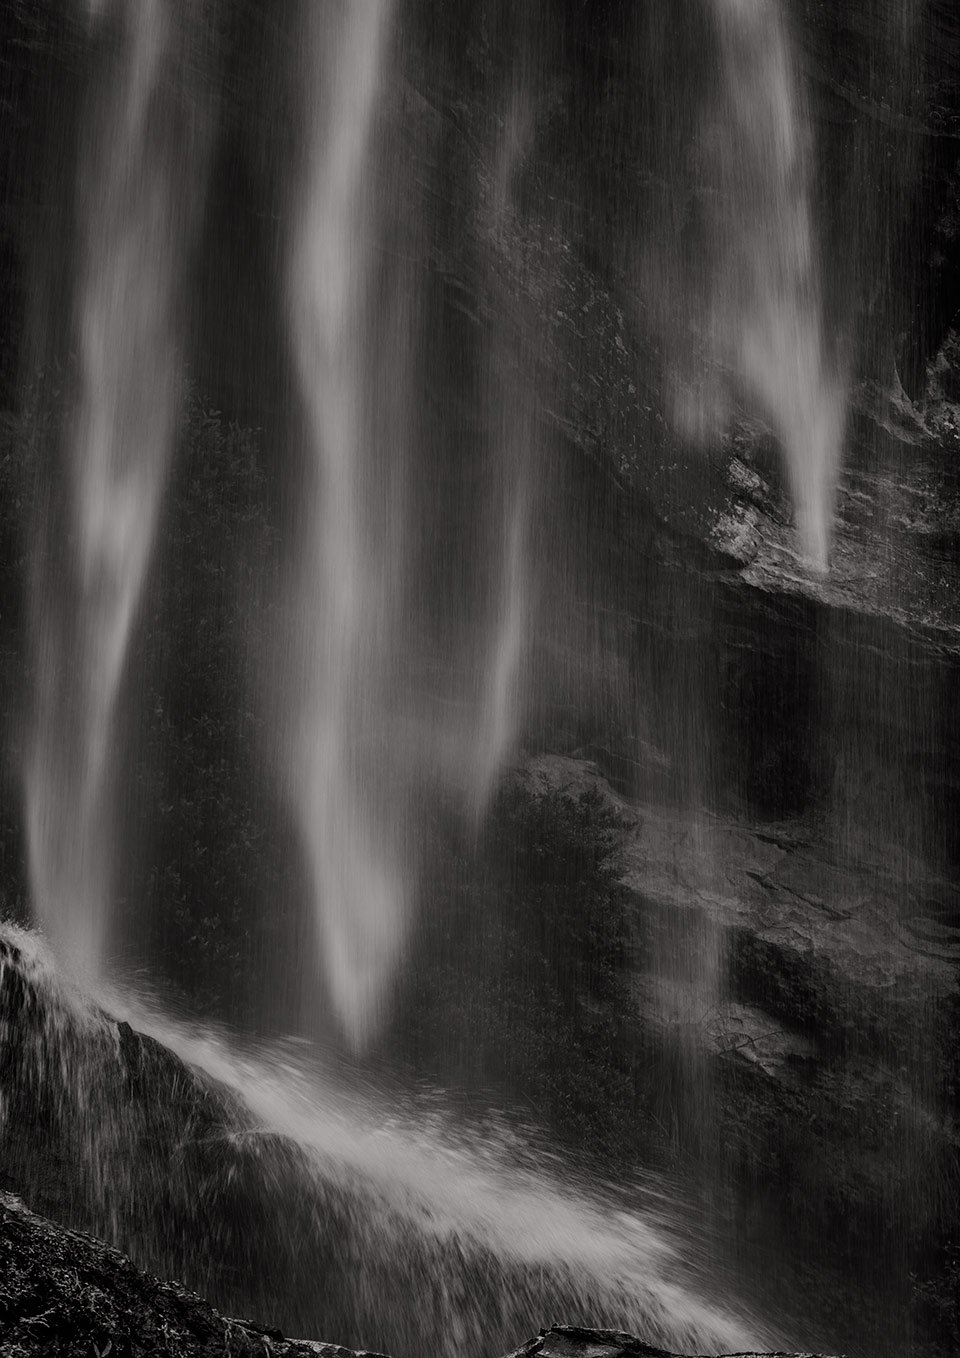 Katoomba-Falls-close-up-water-sculpture-Copyright-Warren-Hinder-2022.jpg